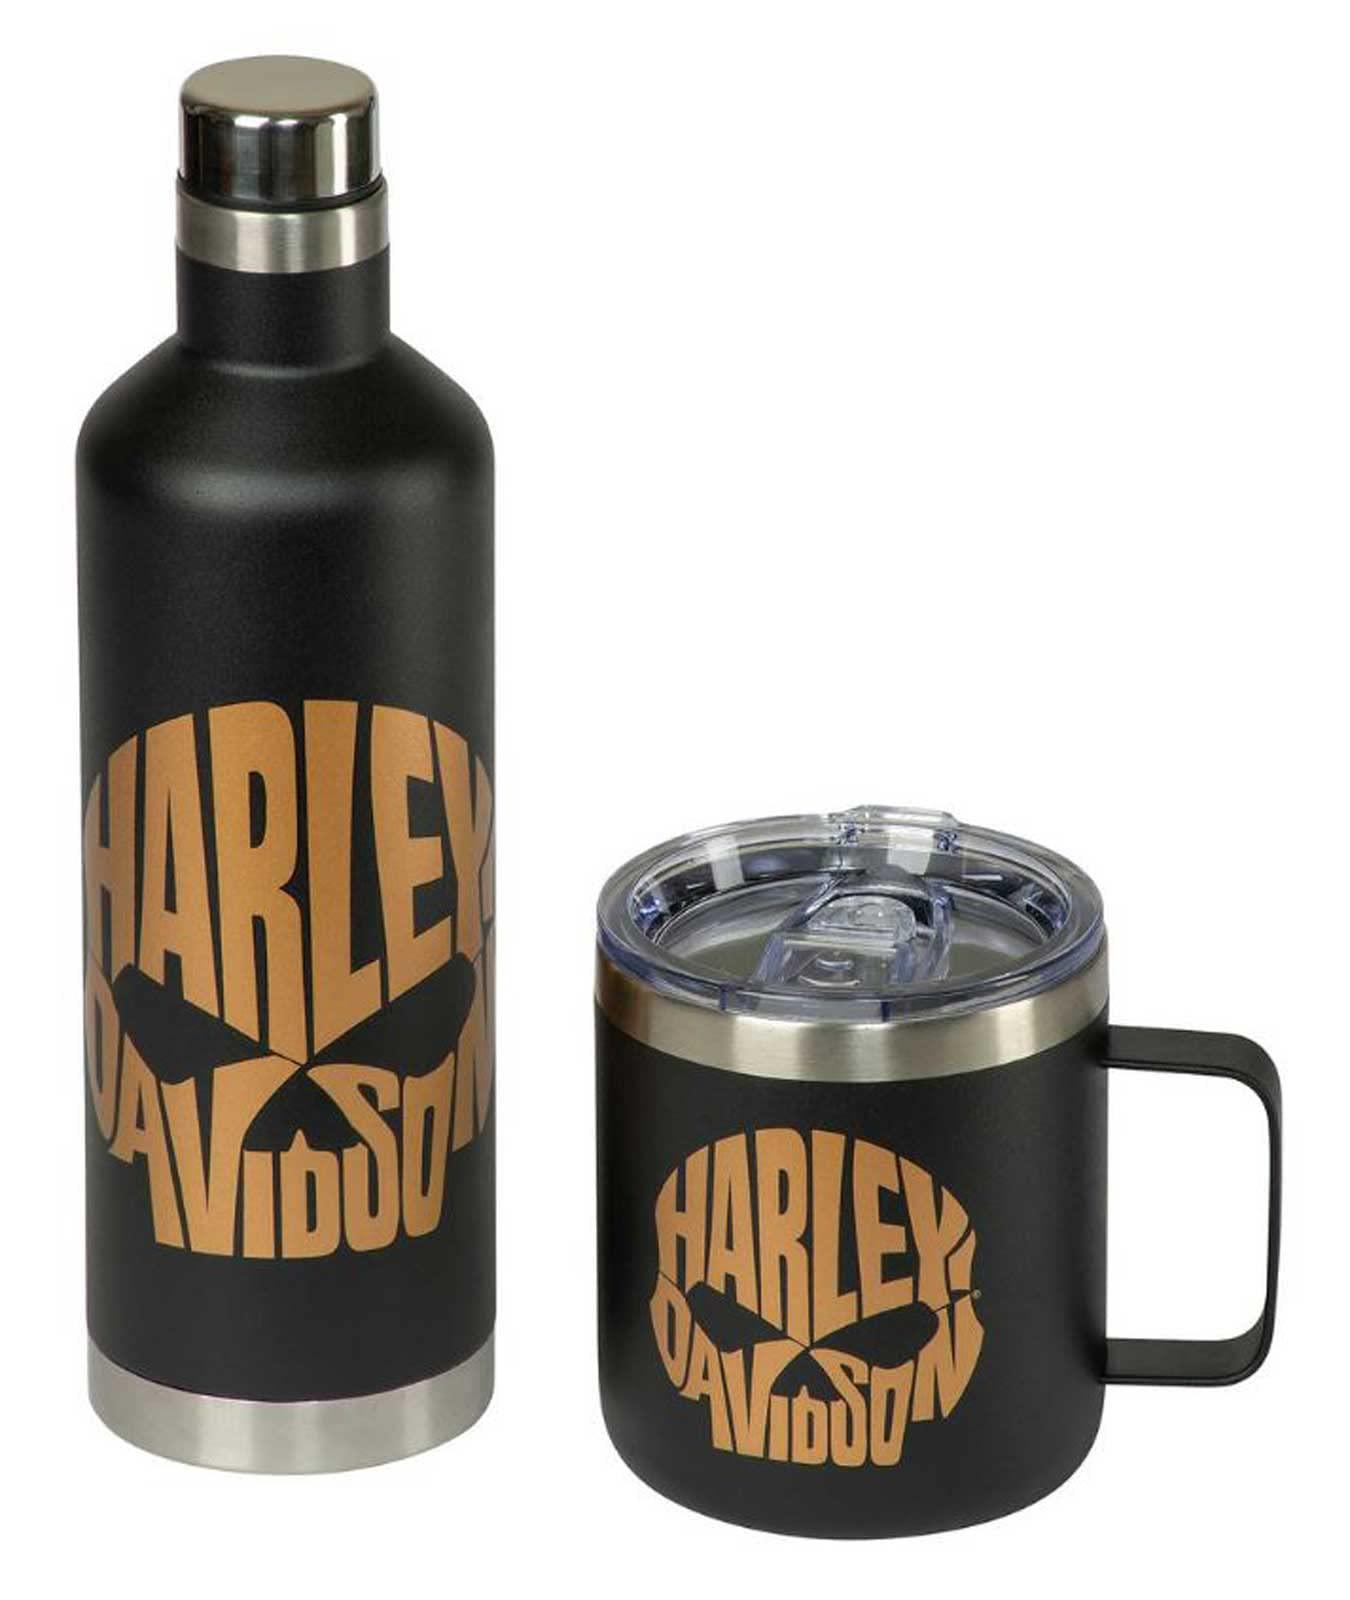 harley-davidson copper skull travel mug & water bottle set - stainless steel